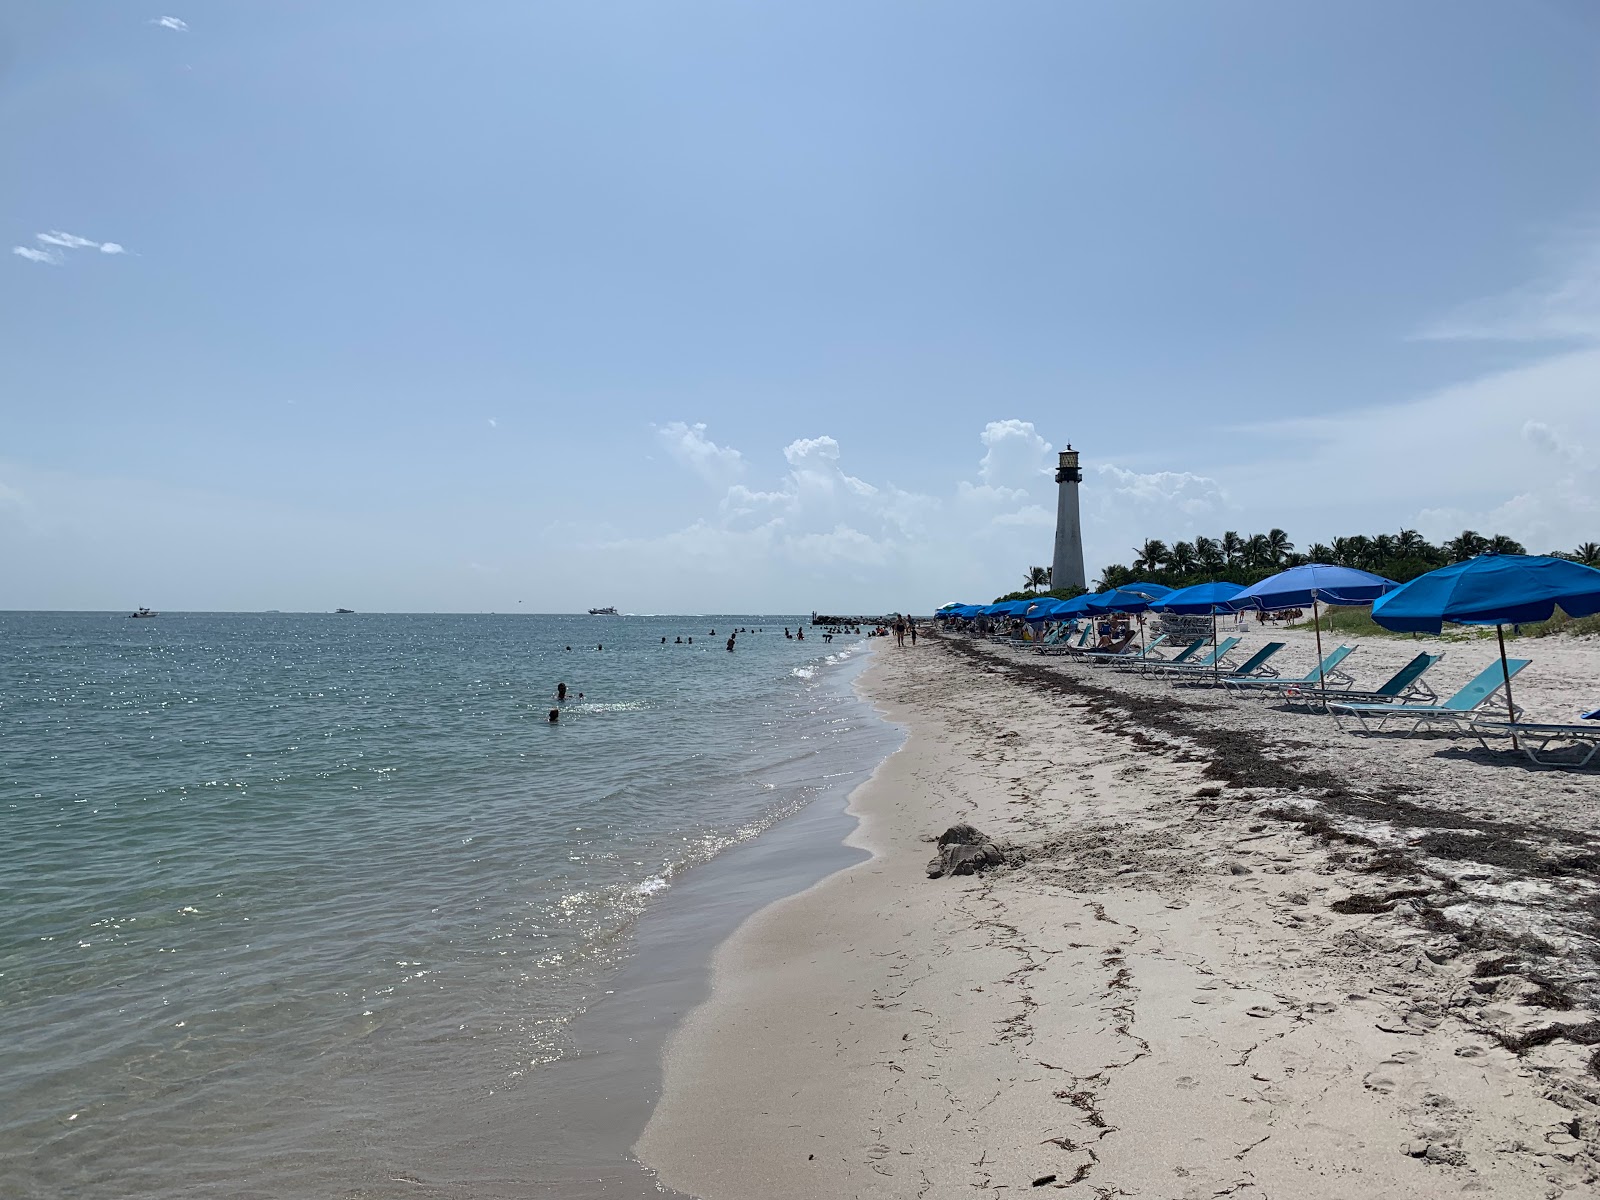 Cape Florida beach'in fotoğrafı geniş plaj ile birlikte